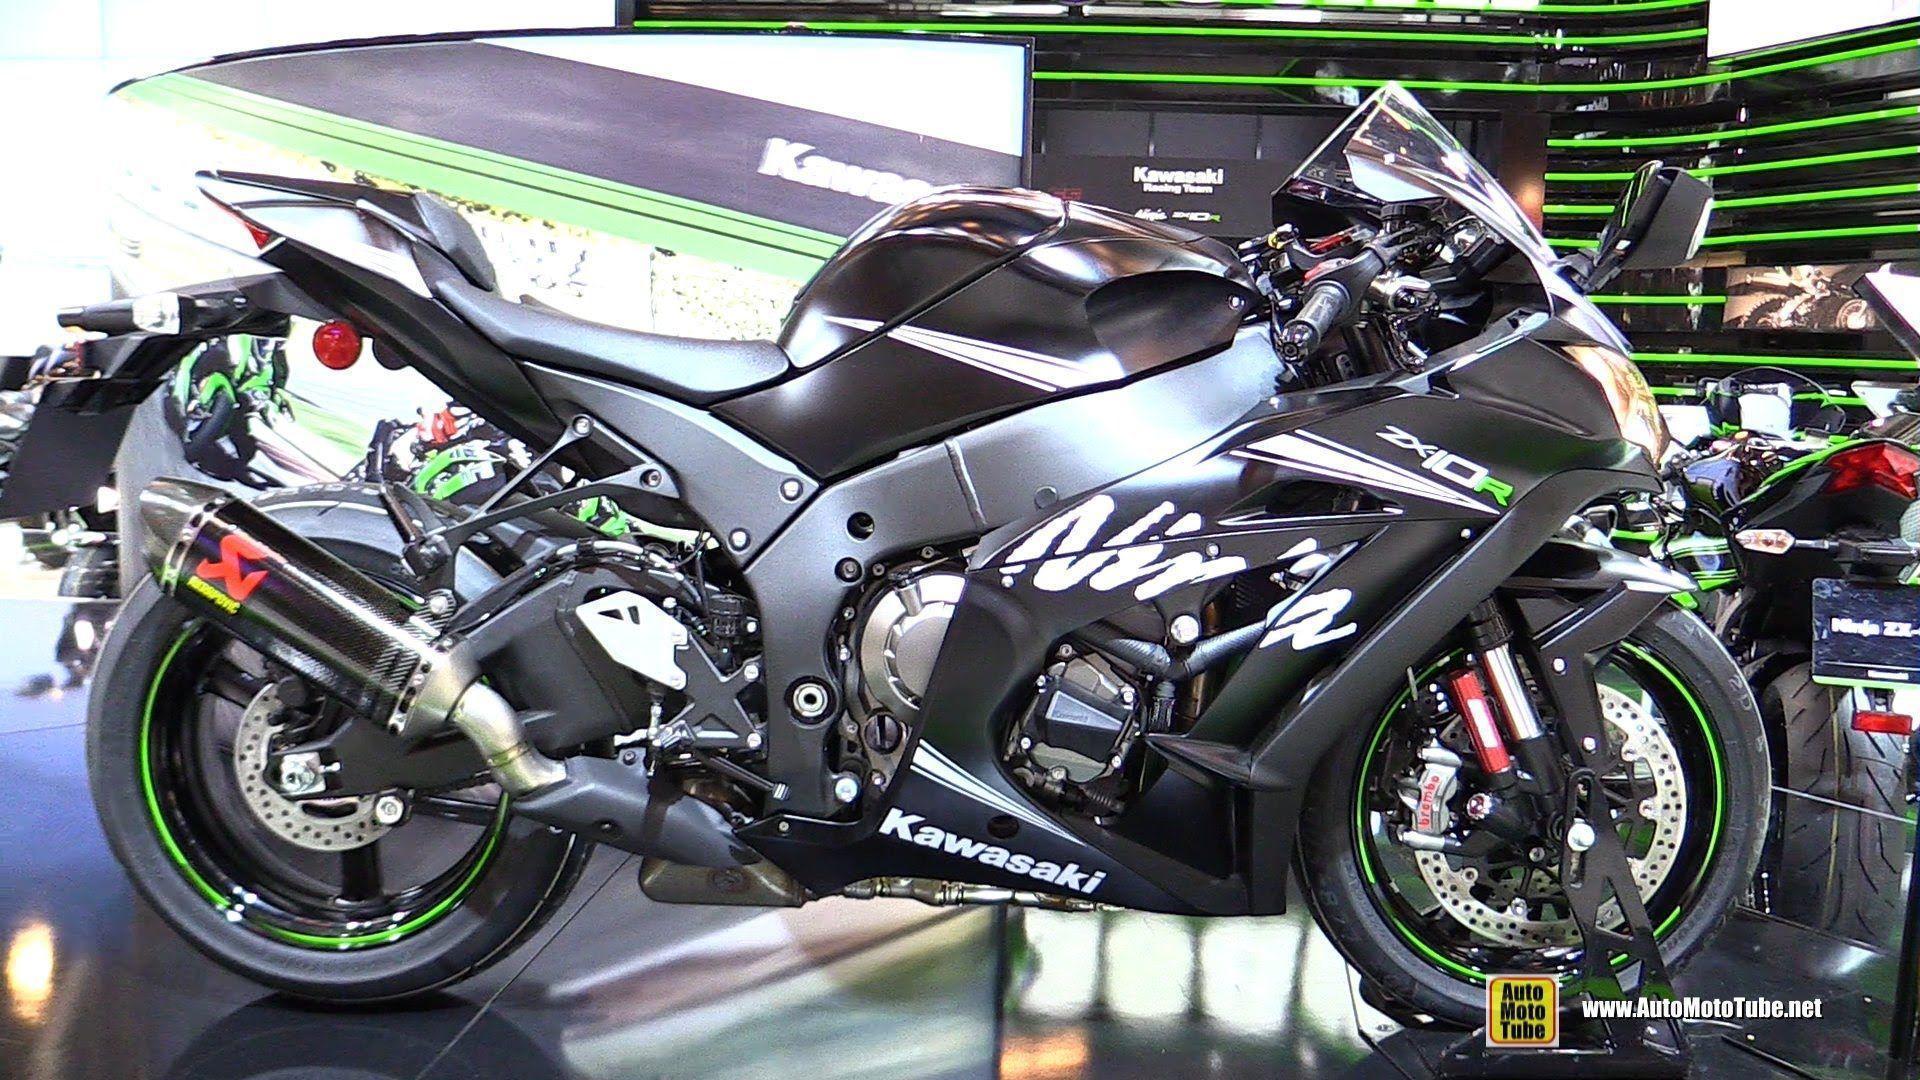 90 Gambar Motor Kawasaki Ninja Lama Terbaru Dan Terlengkap Tales